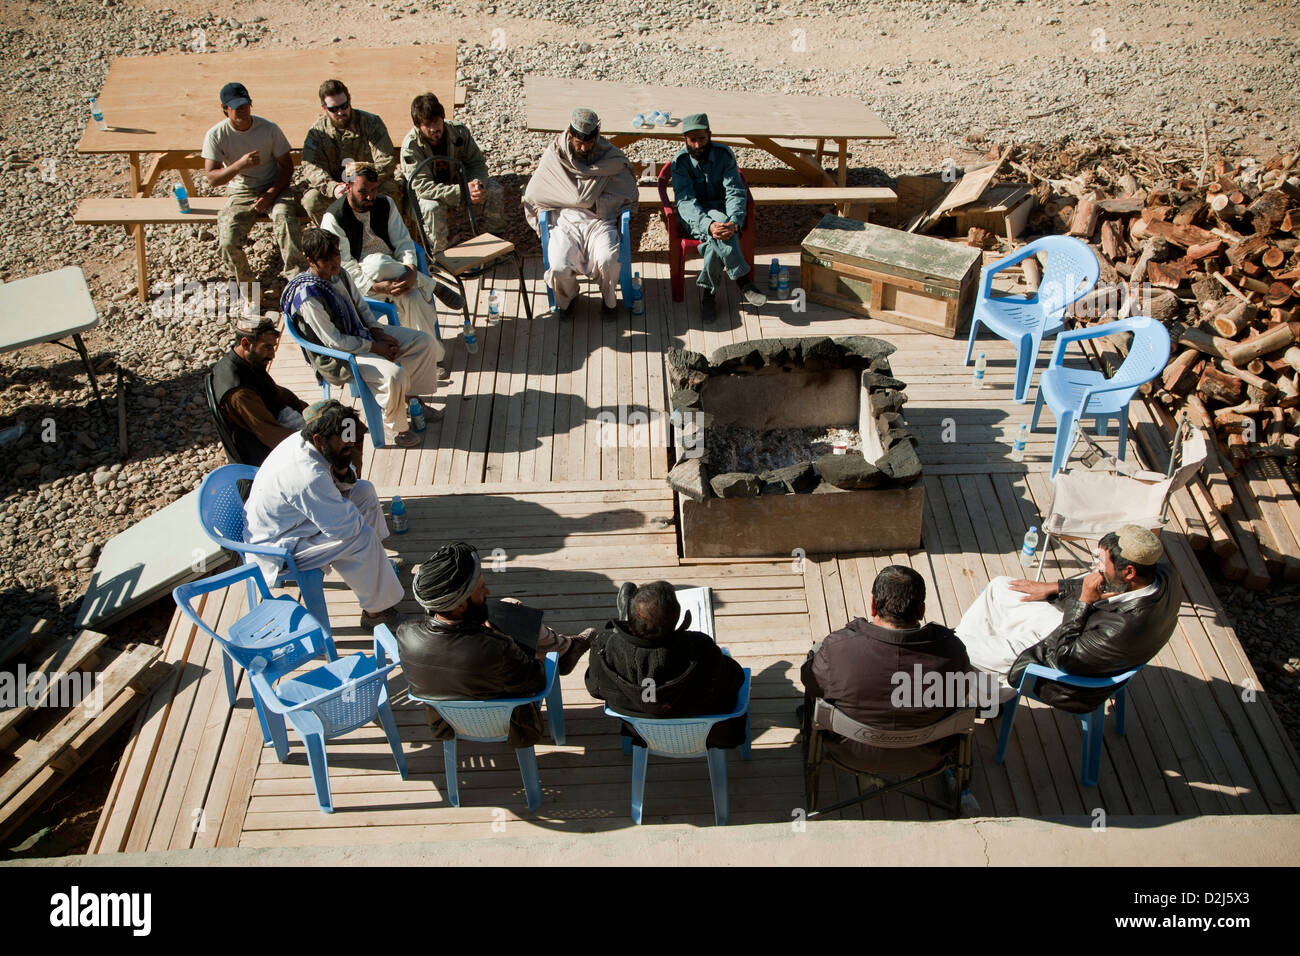 Delle forze speciali degli Stati Uniti a mantenere la sicurezza durante un incontro con il locale afghano e poliziotti nazionale di parlare di sé il supporto per l'ALP e ANP nella provincia di Farah, Afghanistan, 3 dicembre 2012. Foto Stock